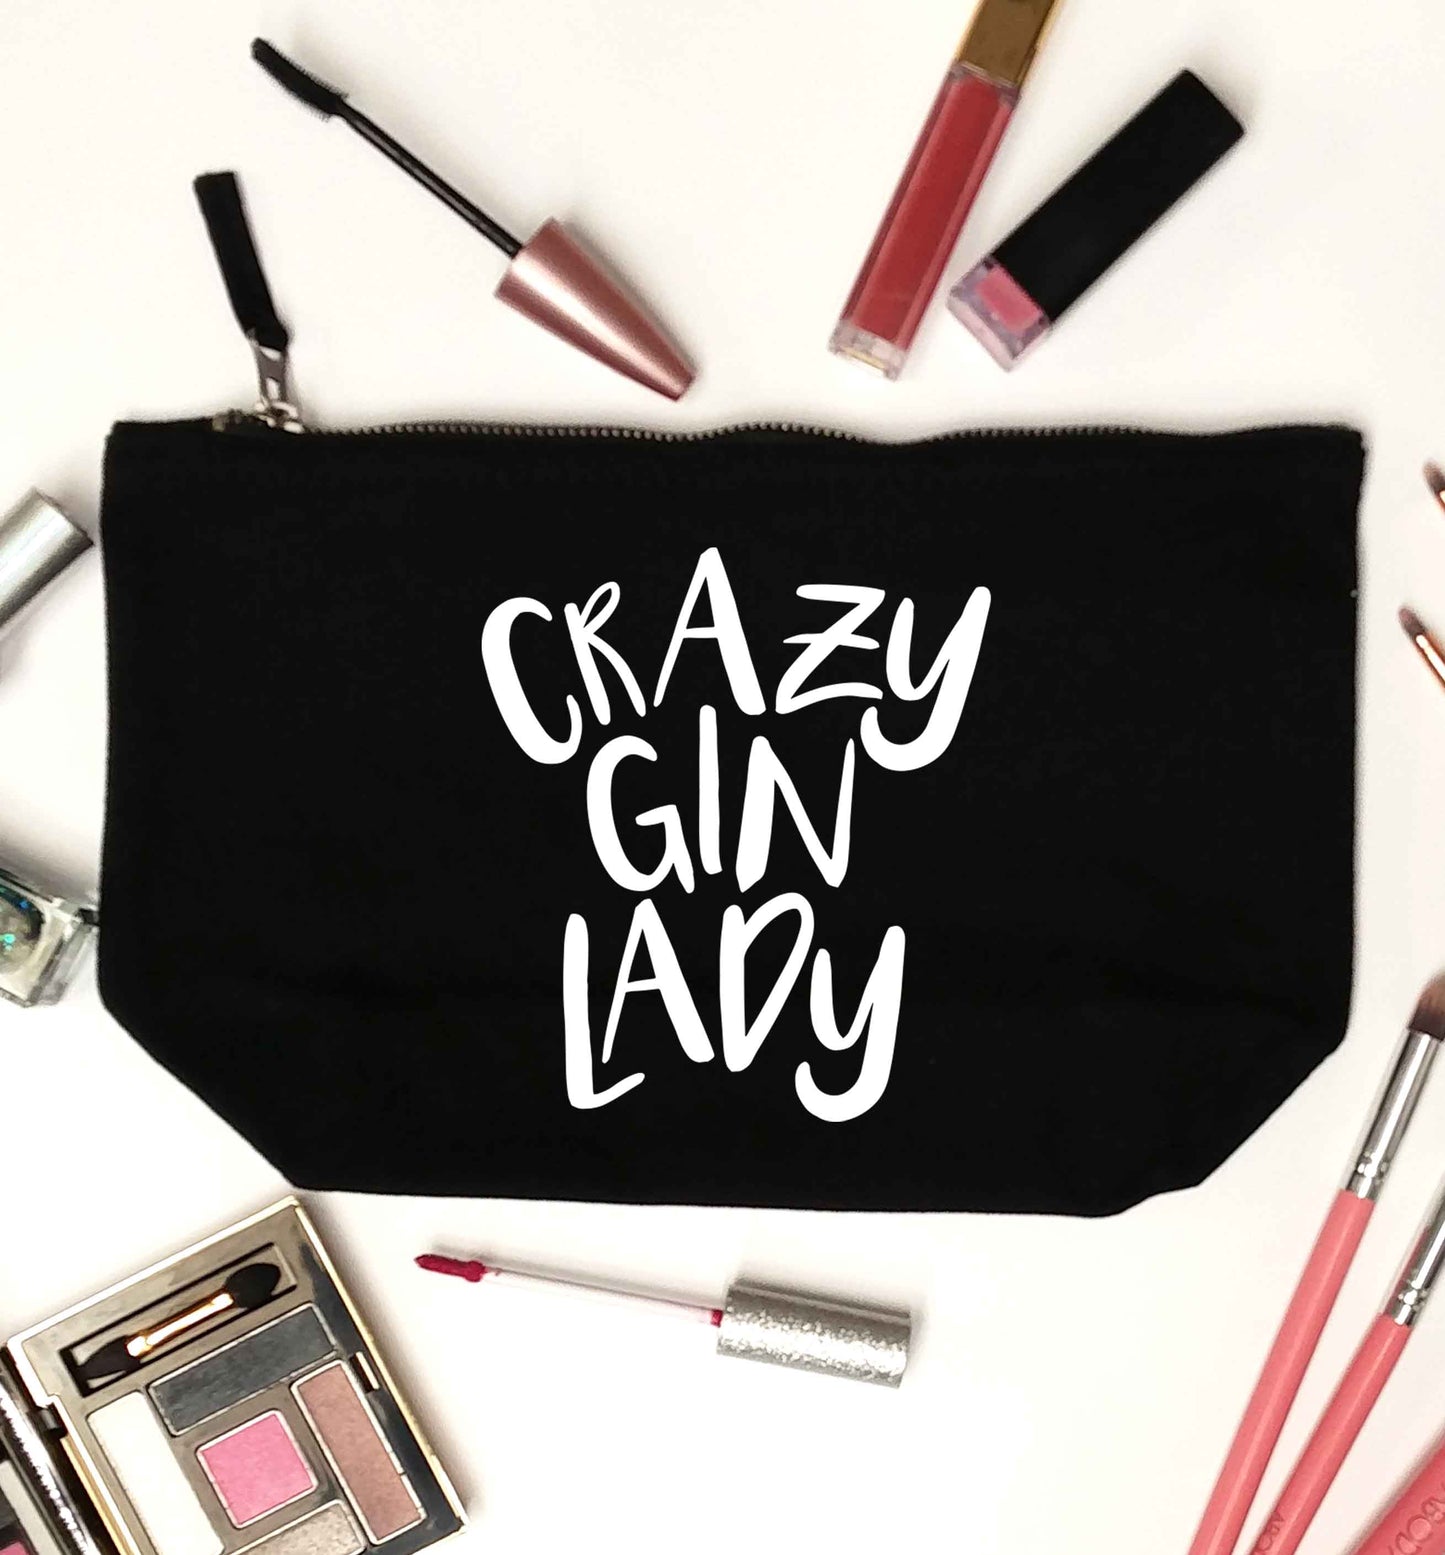 Crazy gin lady black makeup bag